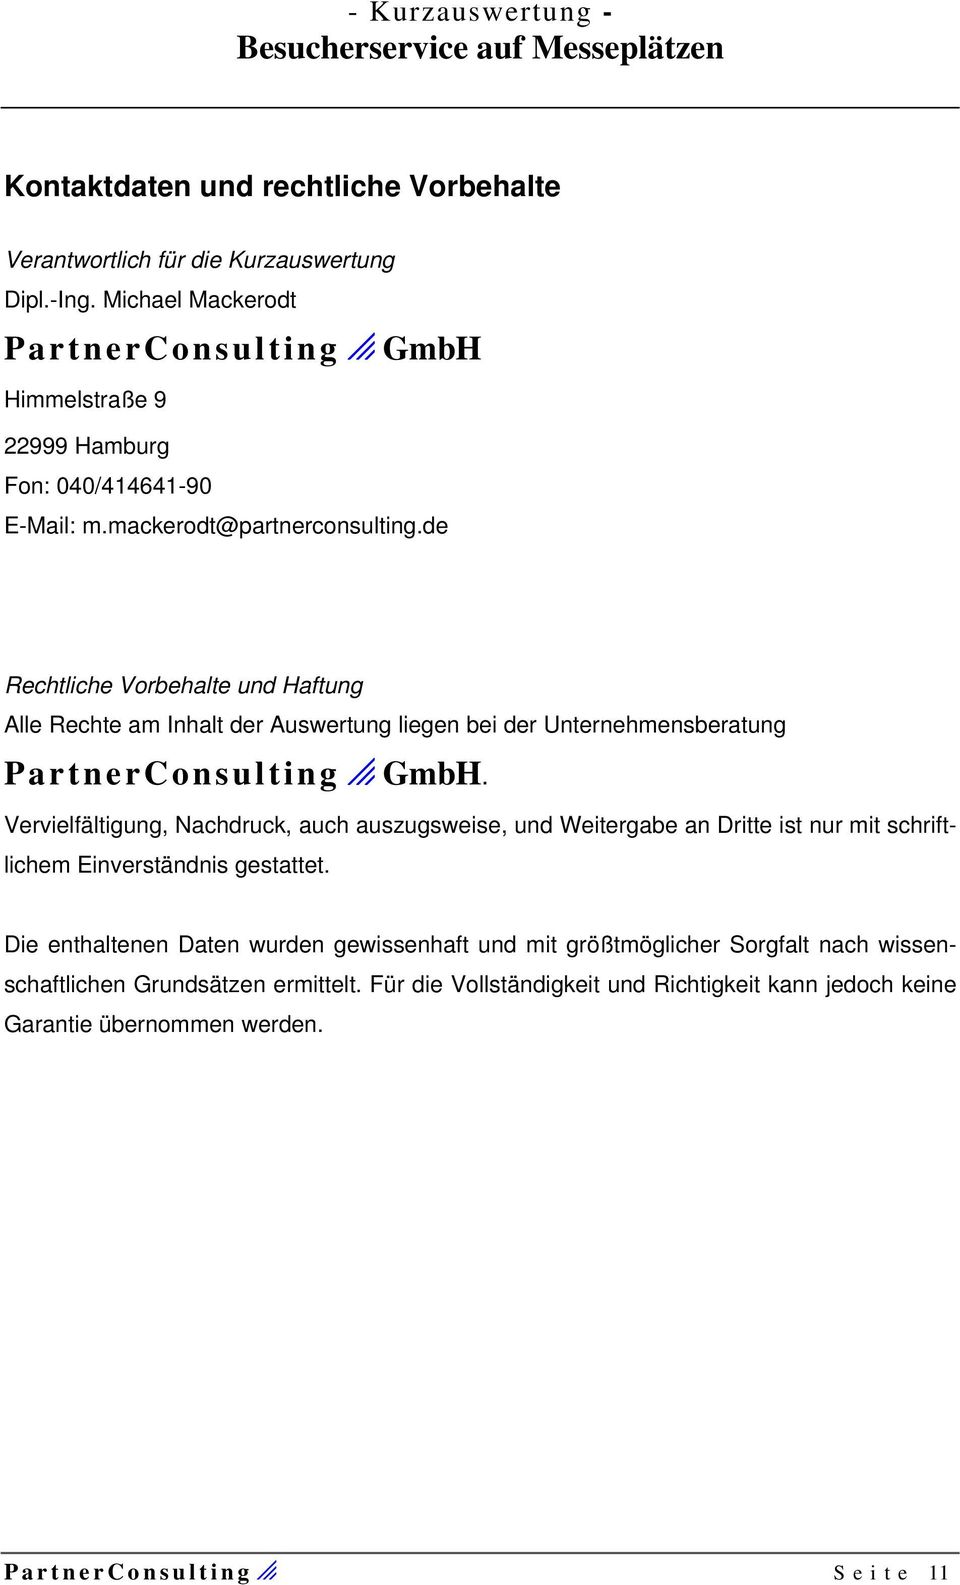 de Rechtliche Vorbehalte und Haftung Alle Rechte am Inhalt der Auswertung liegen bei der Unternehmensberatung PartnerConsultingo GmbH.